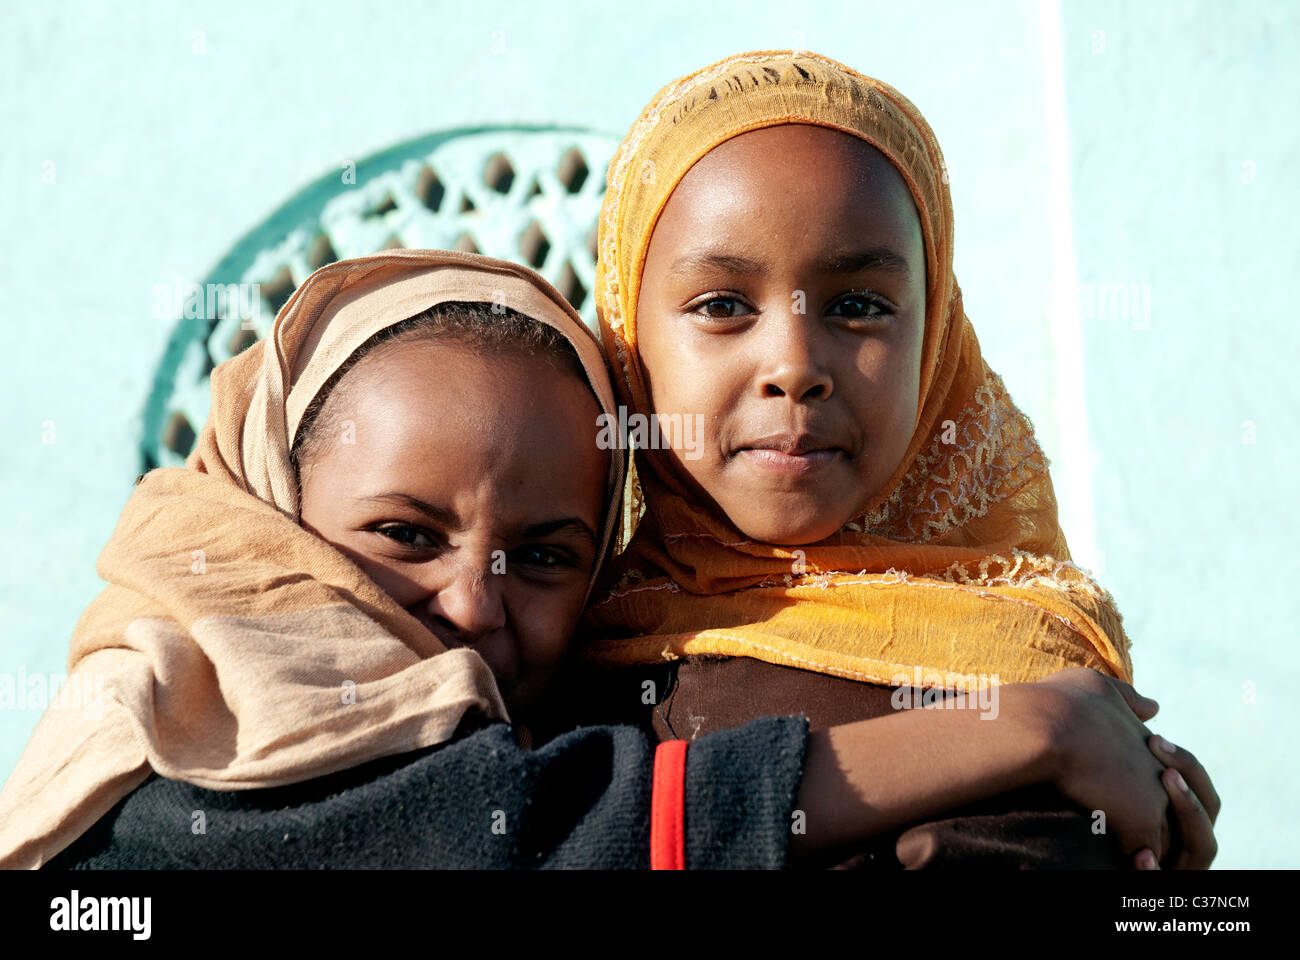 Les filles musulmanes de l'Afrique à Harar en Ethiopie Banque D'Images